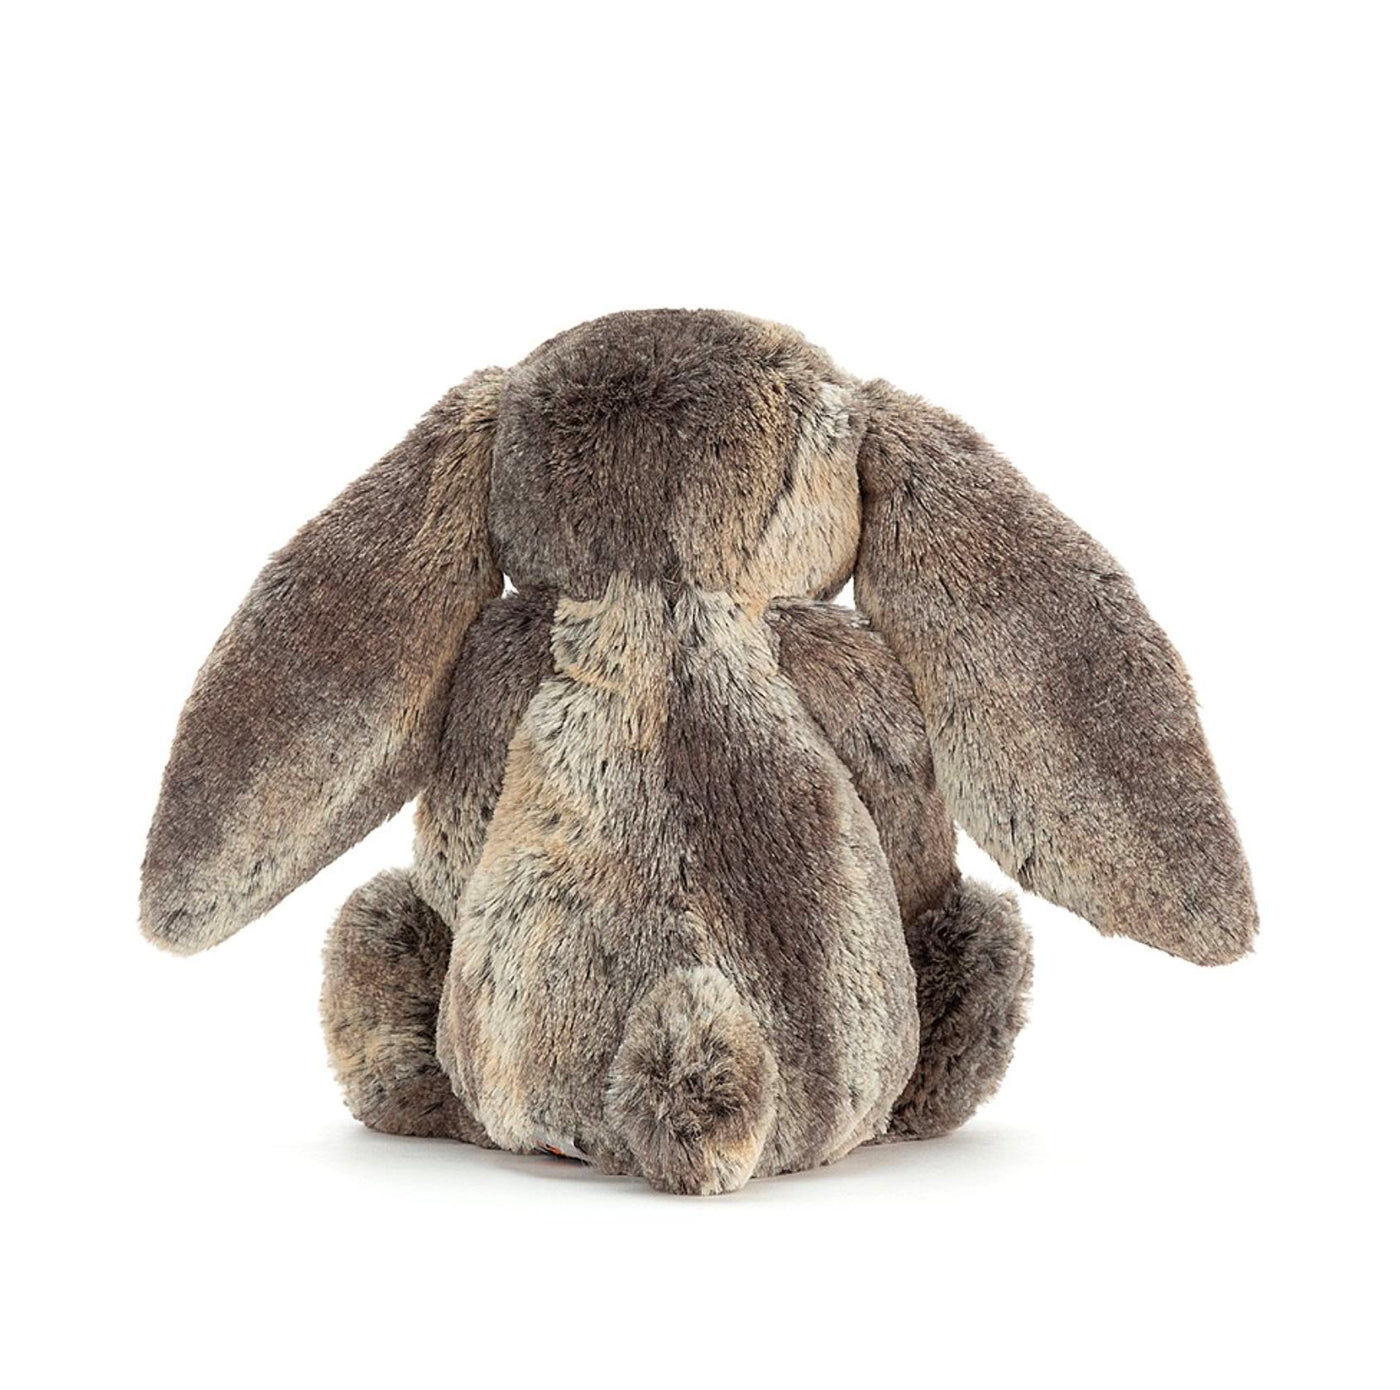 Bashful Cottontail Bunny Medium Soft Toy Jellycat 